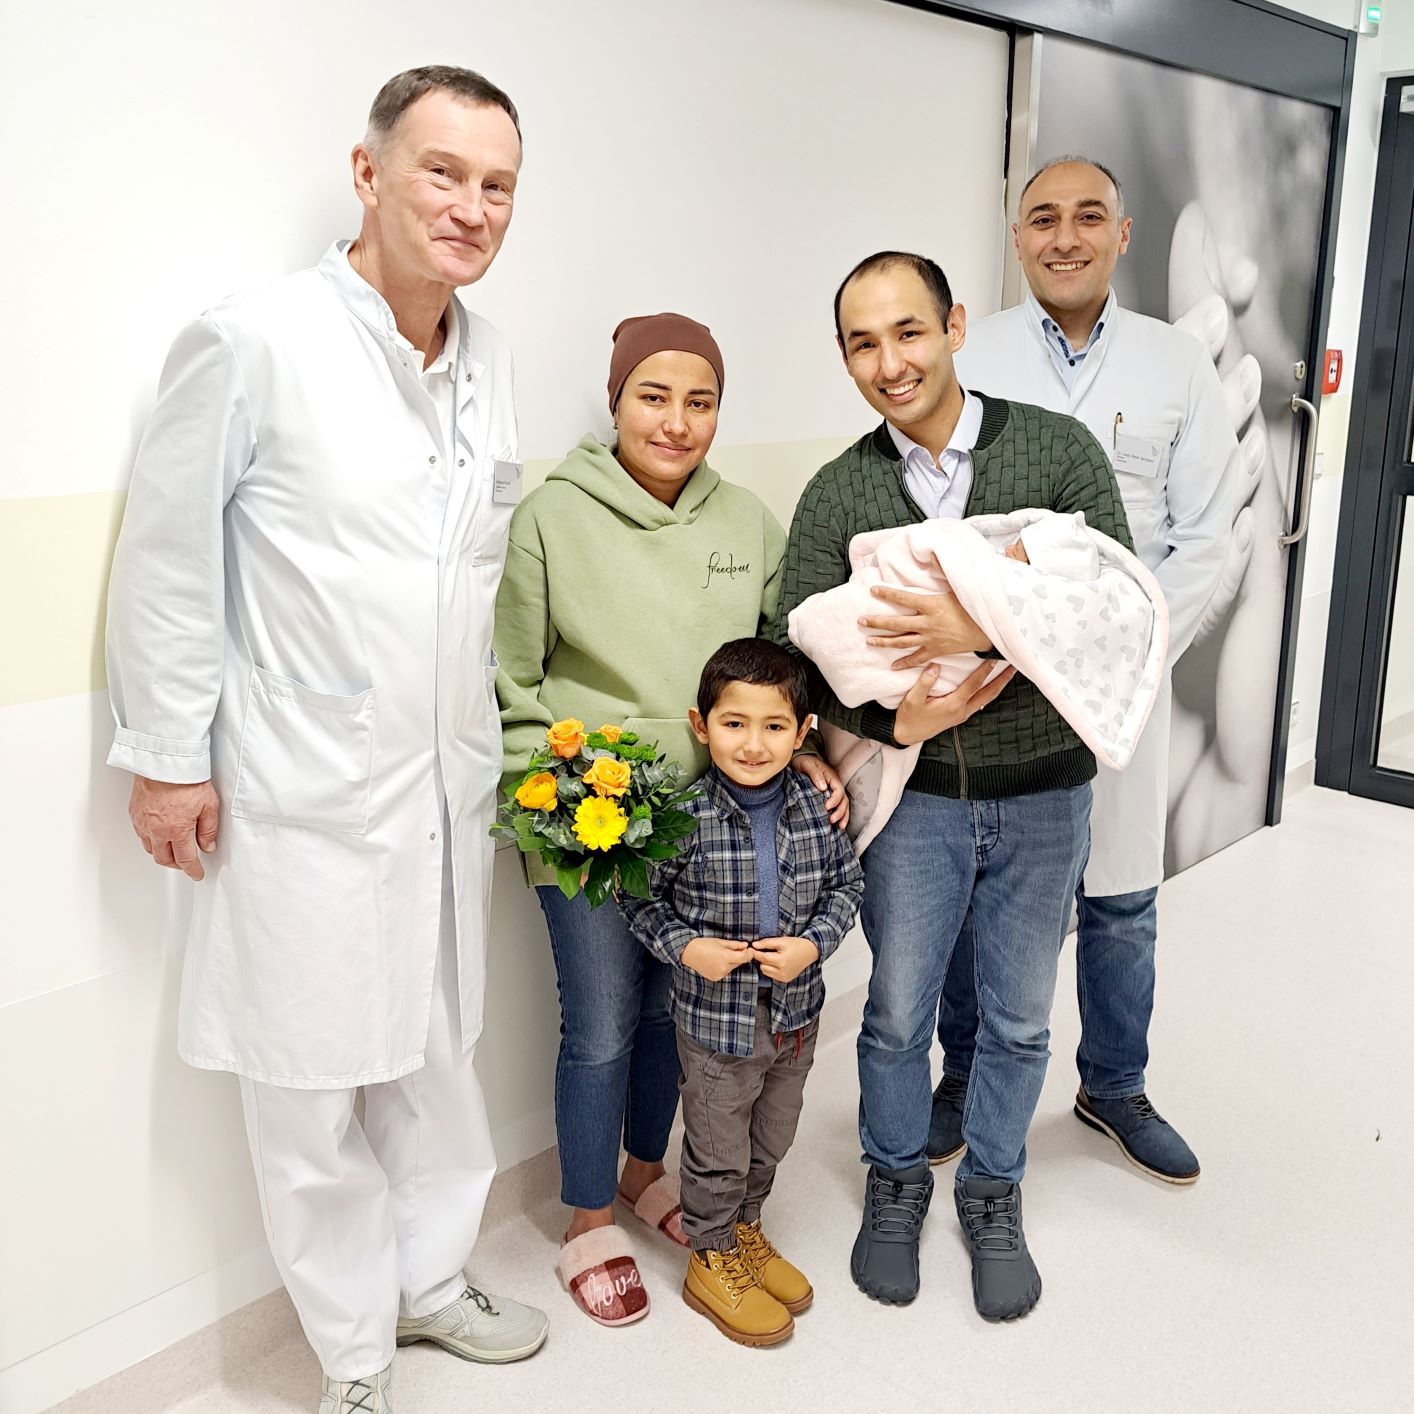 Foto vom Neugeborenen Baby mit den Eltern und Chefarzt Dr. Seropian sowie Oberarzt Andreas Kuznik